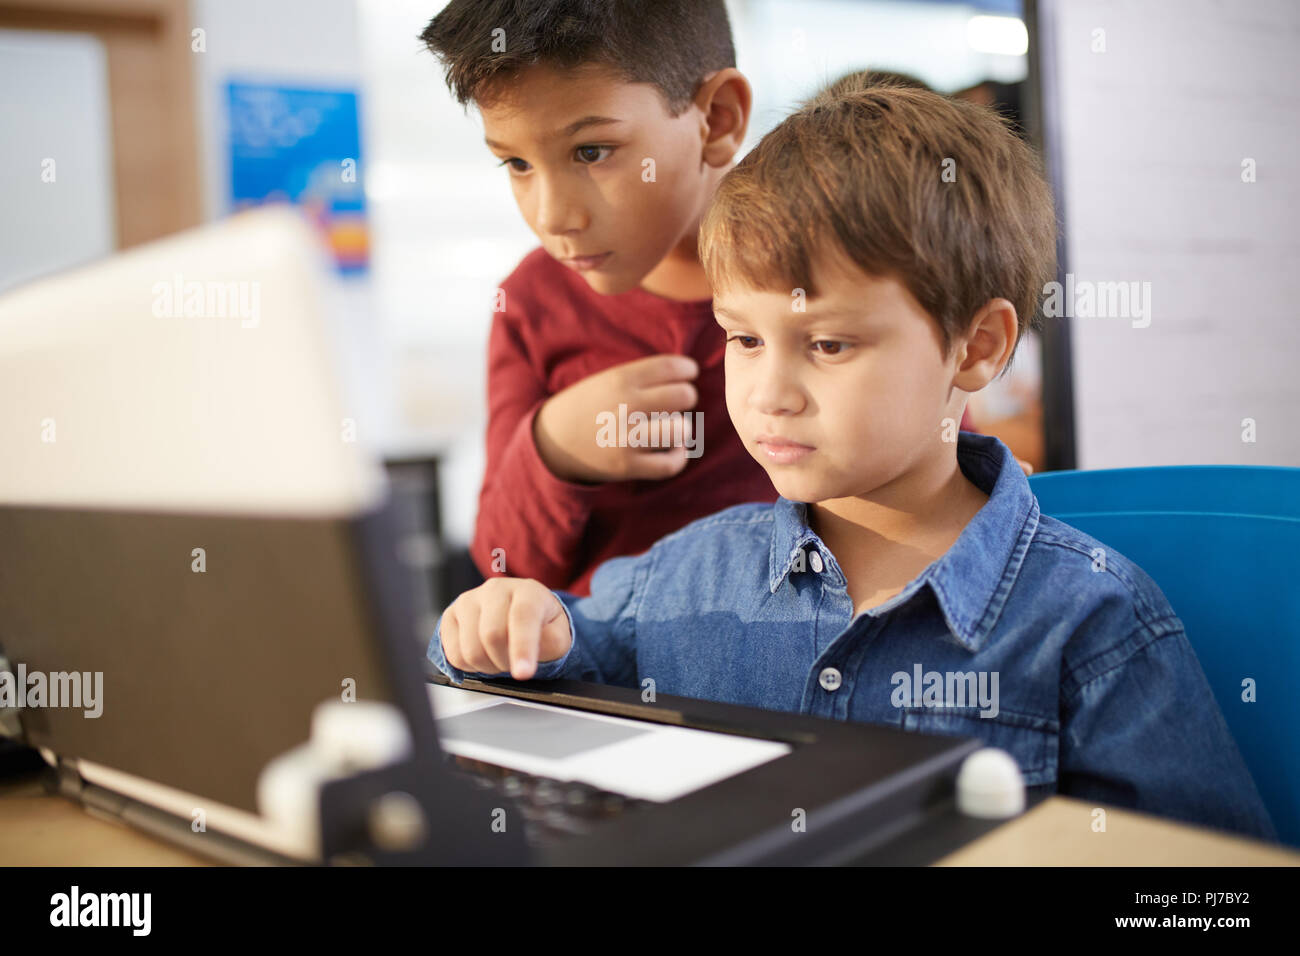 Les garçons à l'aide d'ordinateur portable porté Banque D'Images